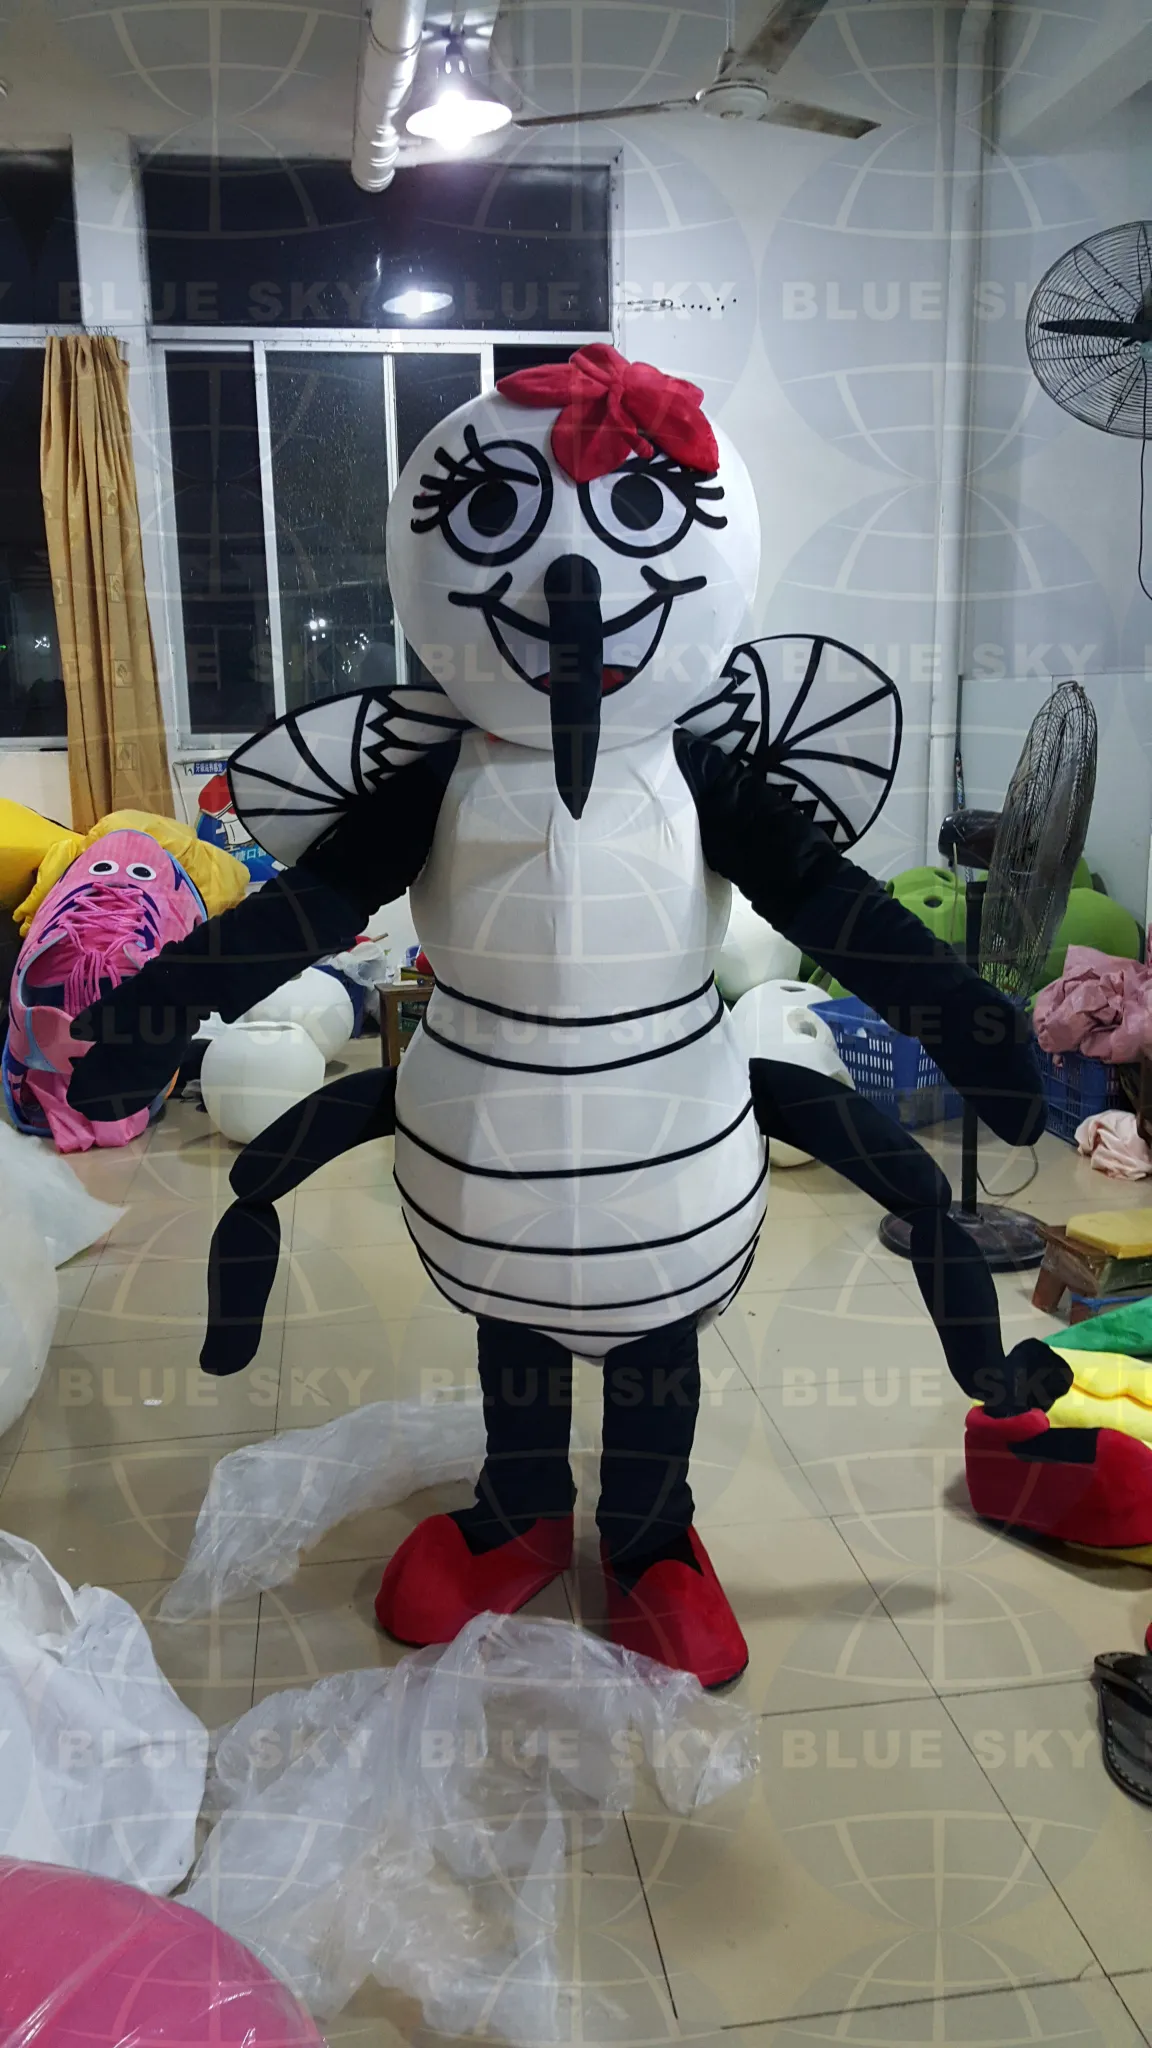 2016 Ny vuxen myggmaskottad kostym myggmaskott myggdräkt till salu precis som bilderna